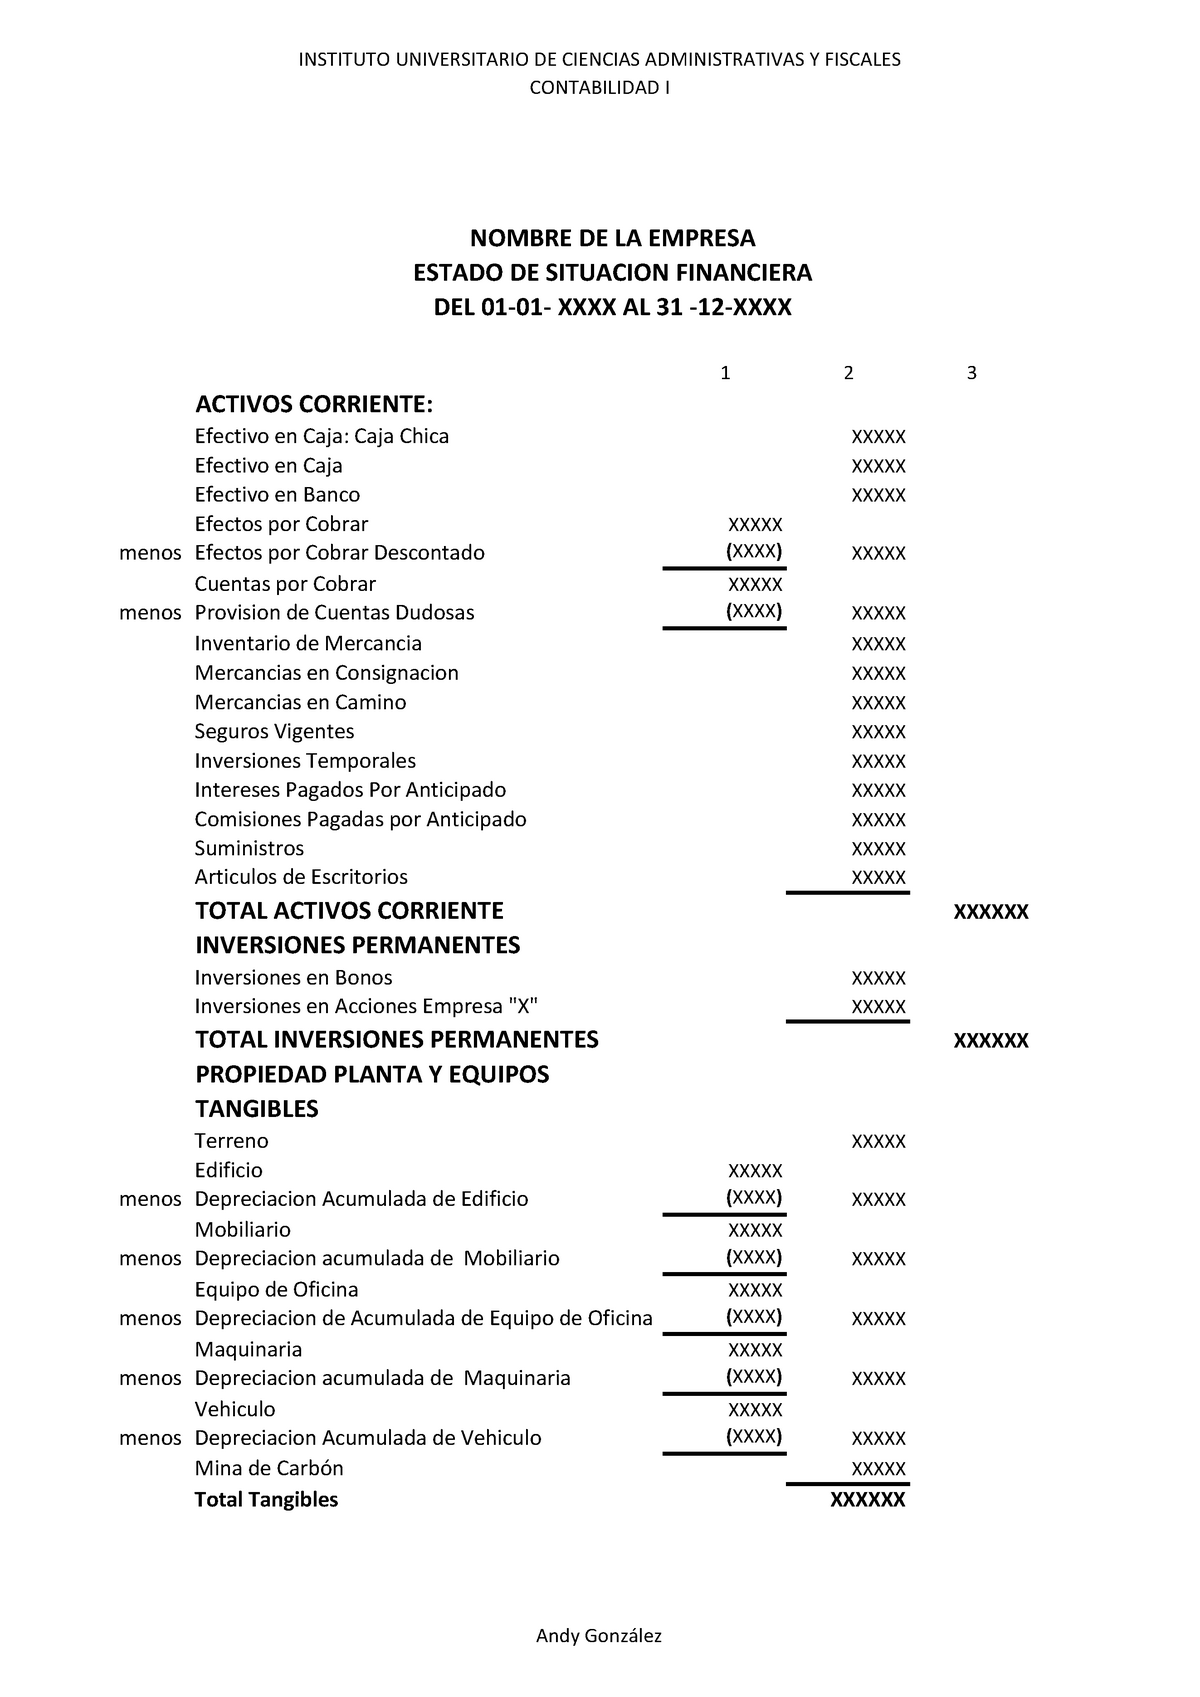 Estado De Situacion Financiera Instituto Universitario De Ciencias Administrativas Y Fiscales 4847